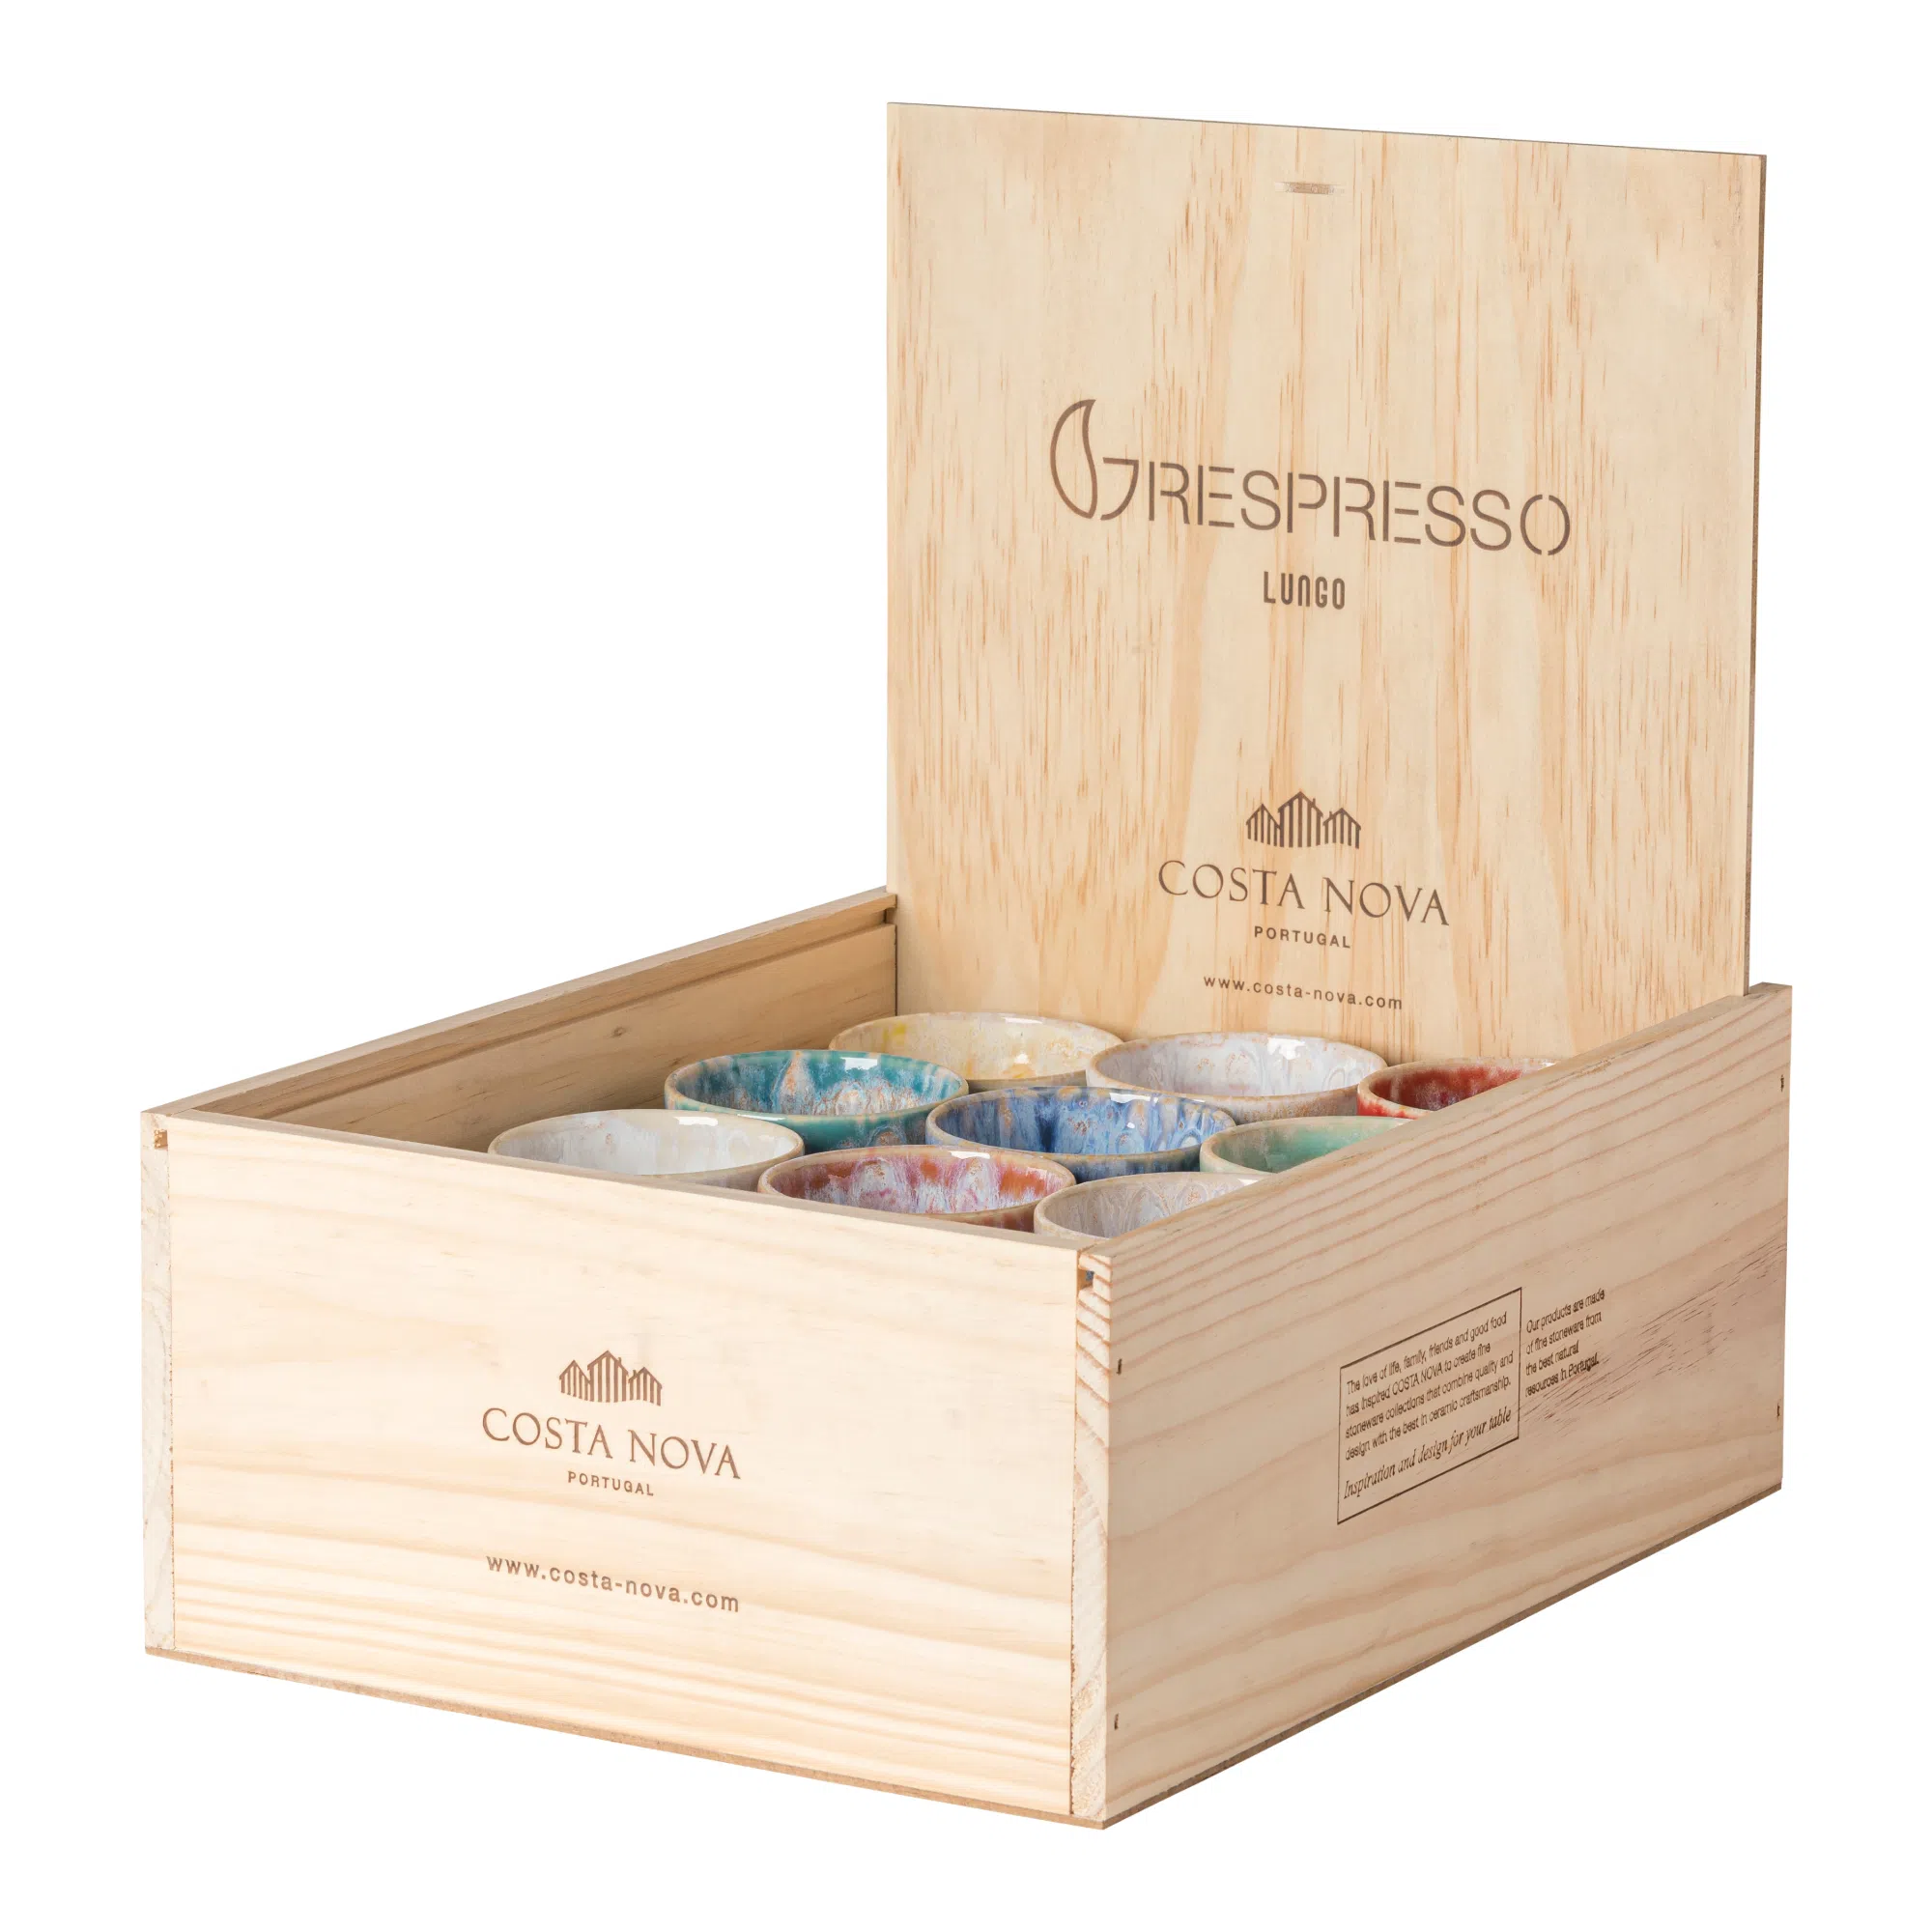 Costa Nova Grespresso Lungo Cup Gift Box - Set of 8 - Multi